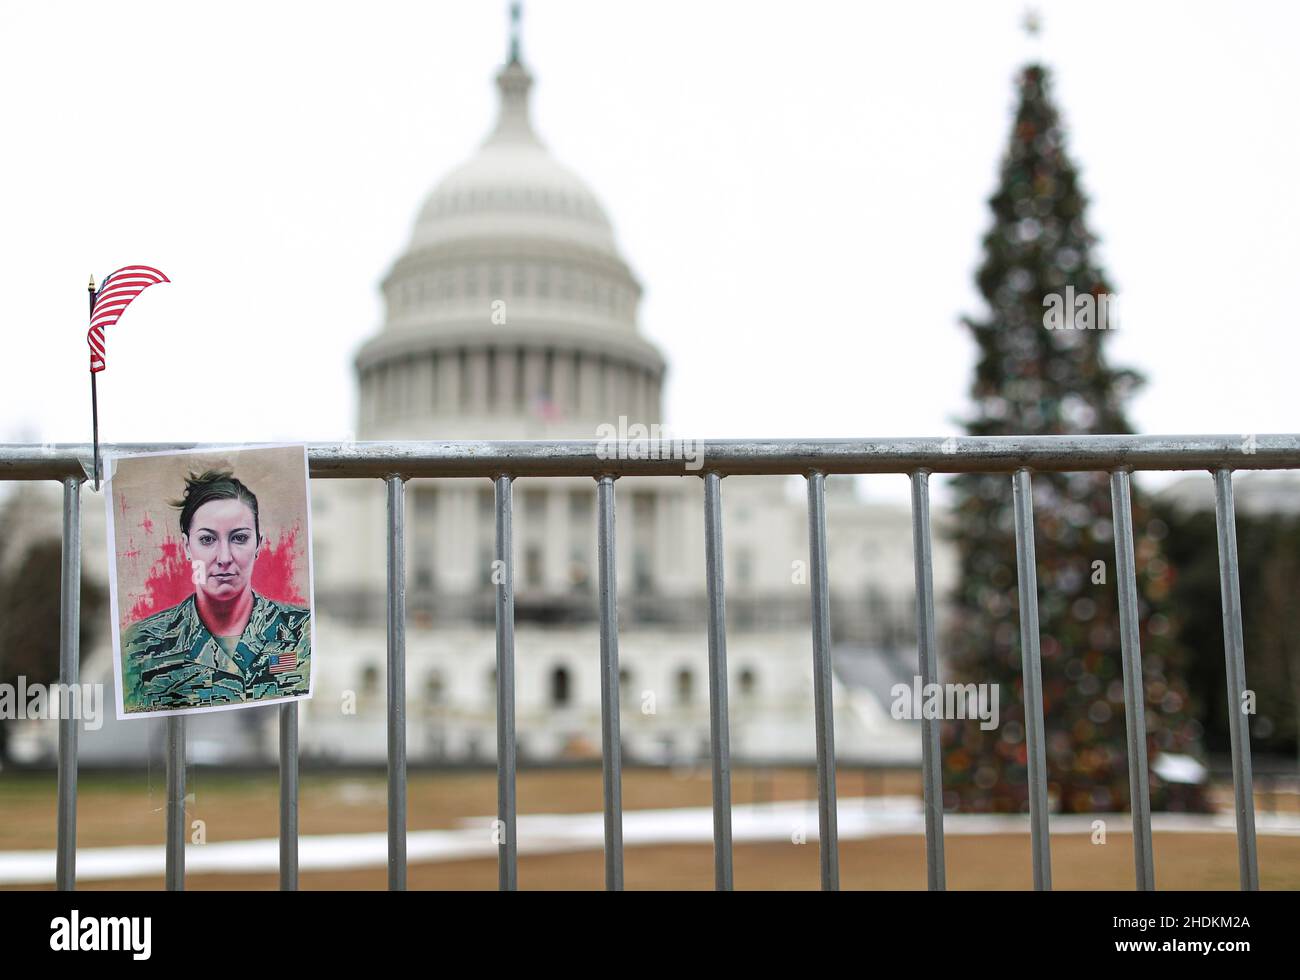 Un portrait d'Ashli Babbitt qui a été abattu lors de l'attaque du 6 janvier 2021 sur le Capitole des États-Unis, est suspendu sur une clôture à l'occasion du premier anniversaire de l'événement devant le Capitole, à Washington, D.C., États-Unis, janvier 6,2022. REUTERS/Tom Brenner Banque D'Images